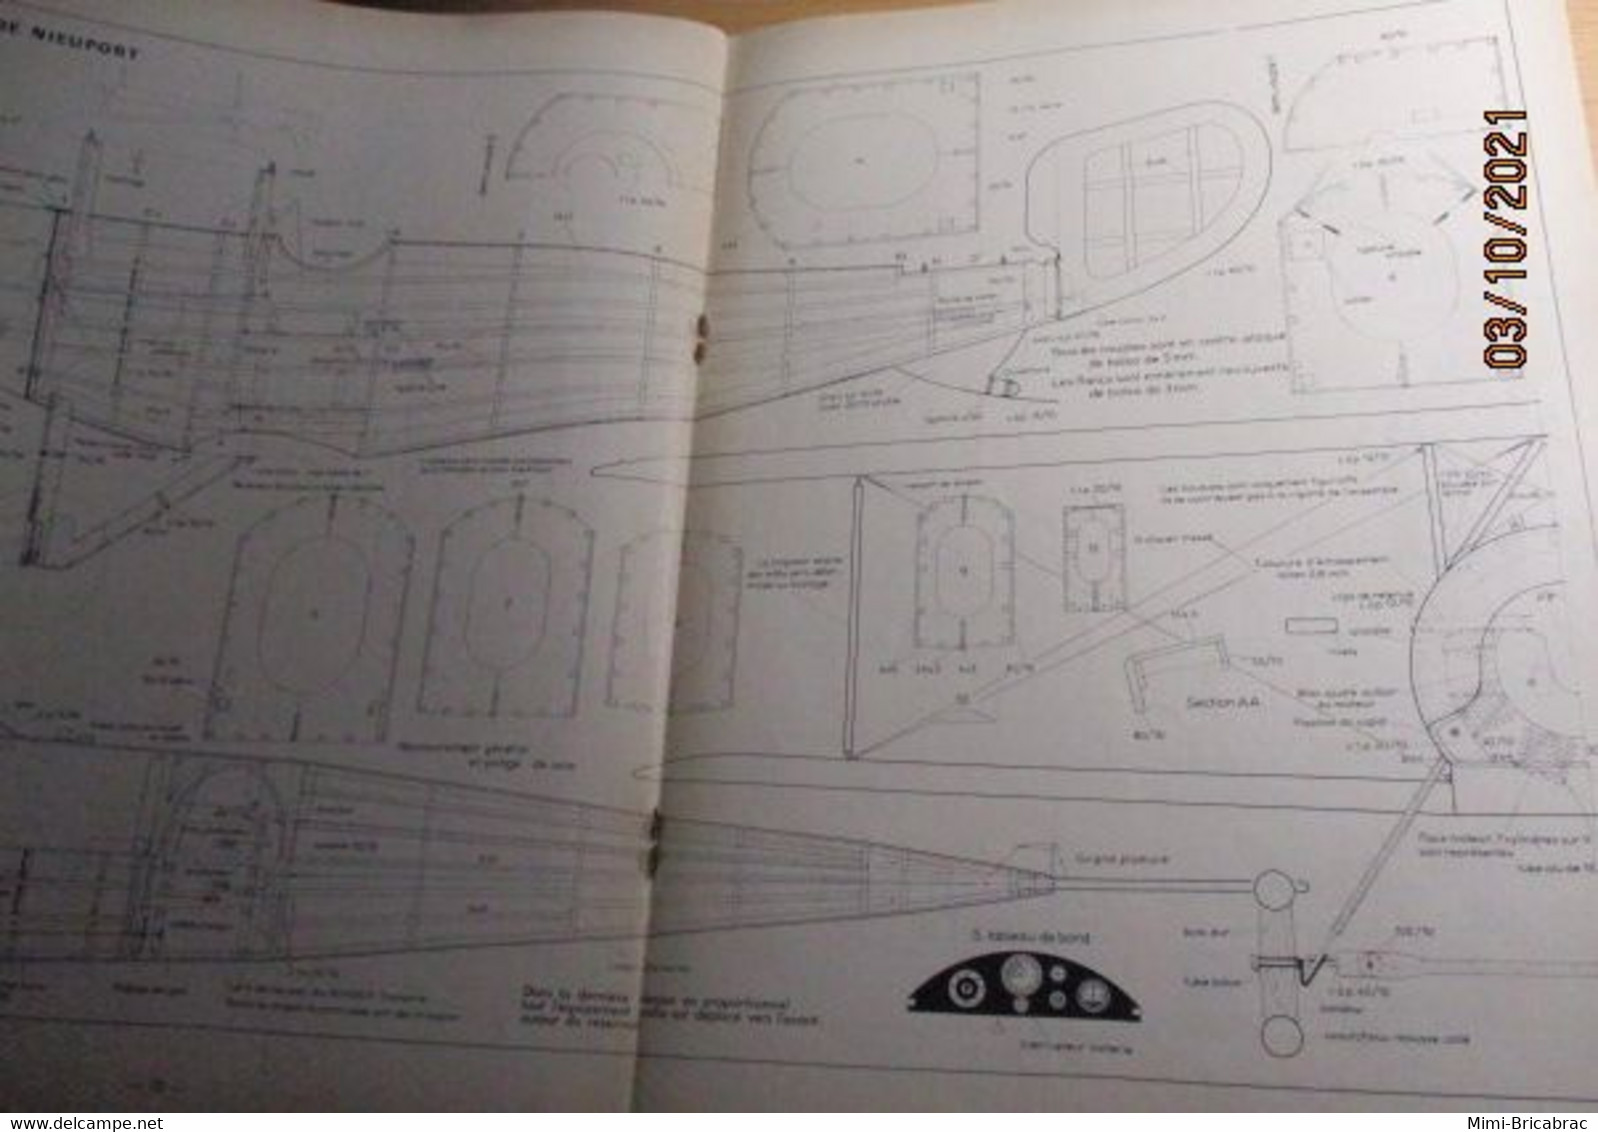 AEROJ20 Revue RADIO MOEDELISME N°11 De 11/1967 Avec Plan En Pages Centrales, En Très Bon état Général - R/C Scale Models